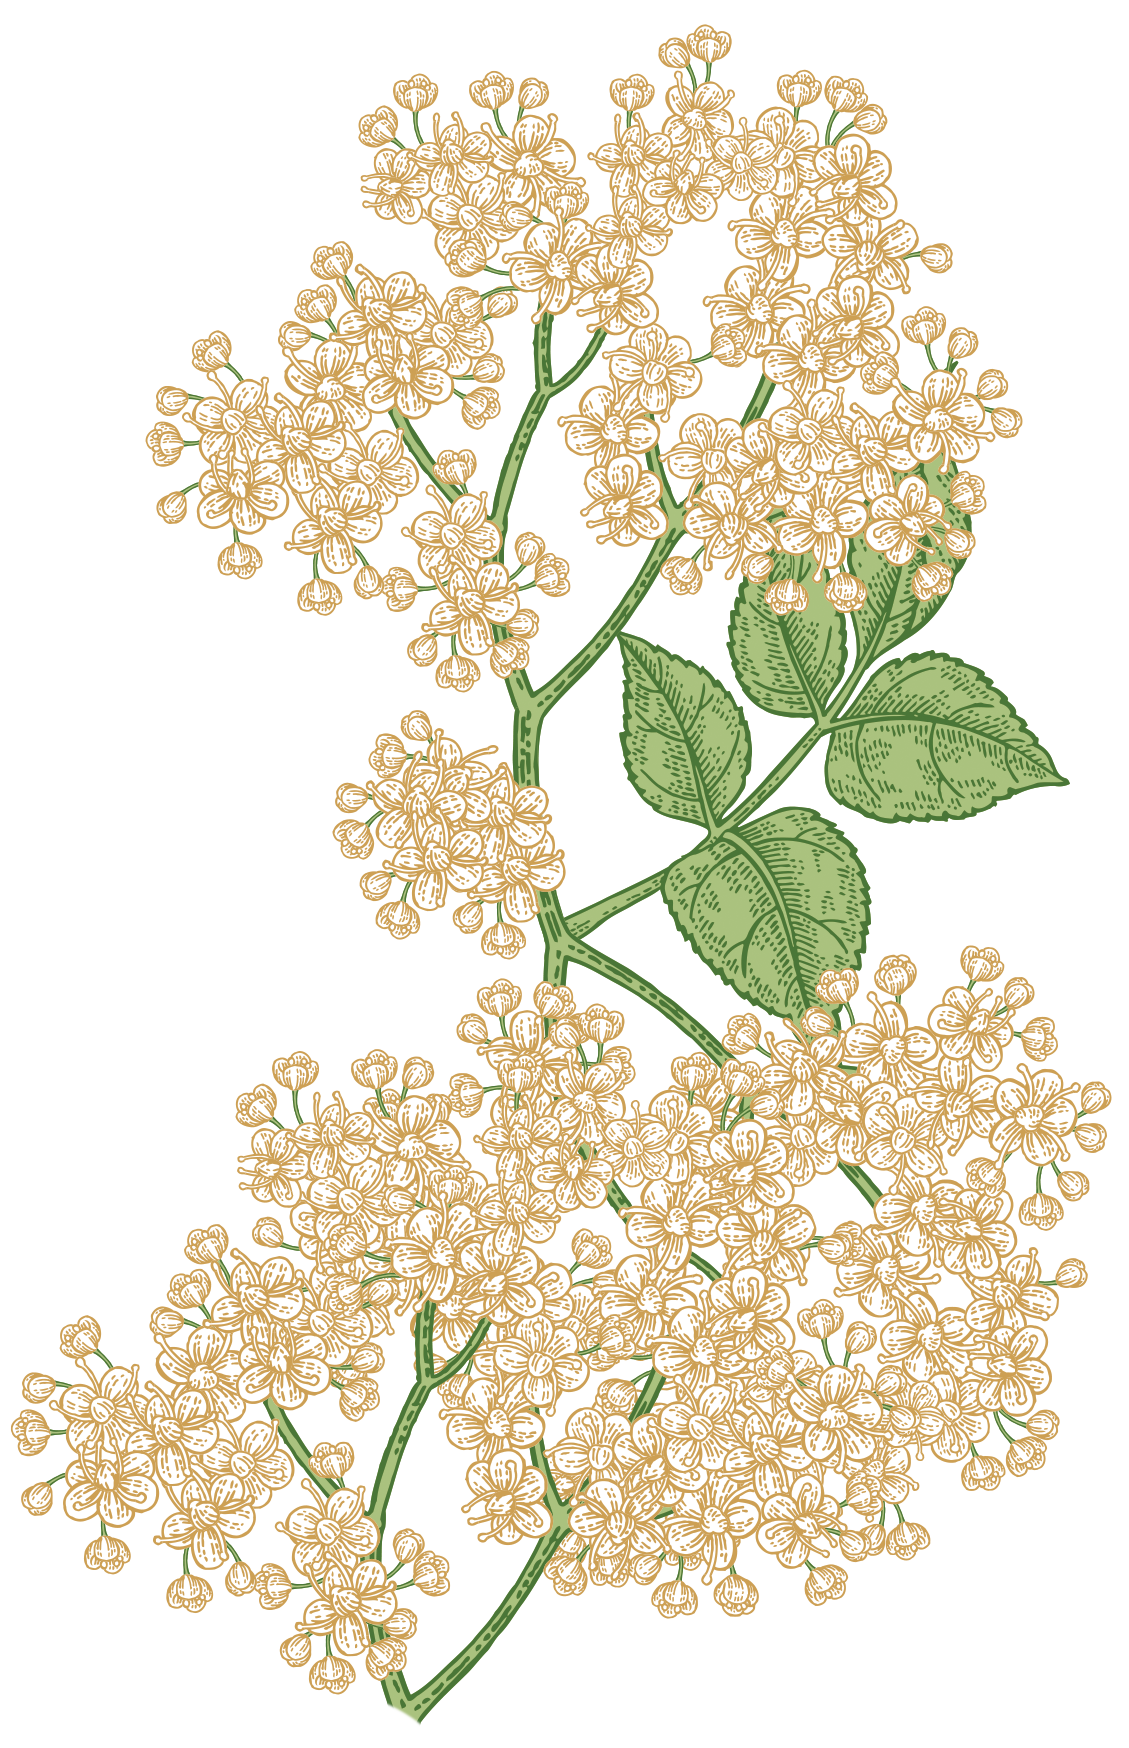 elderflower illustration